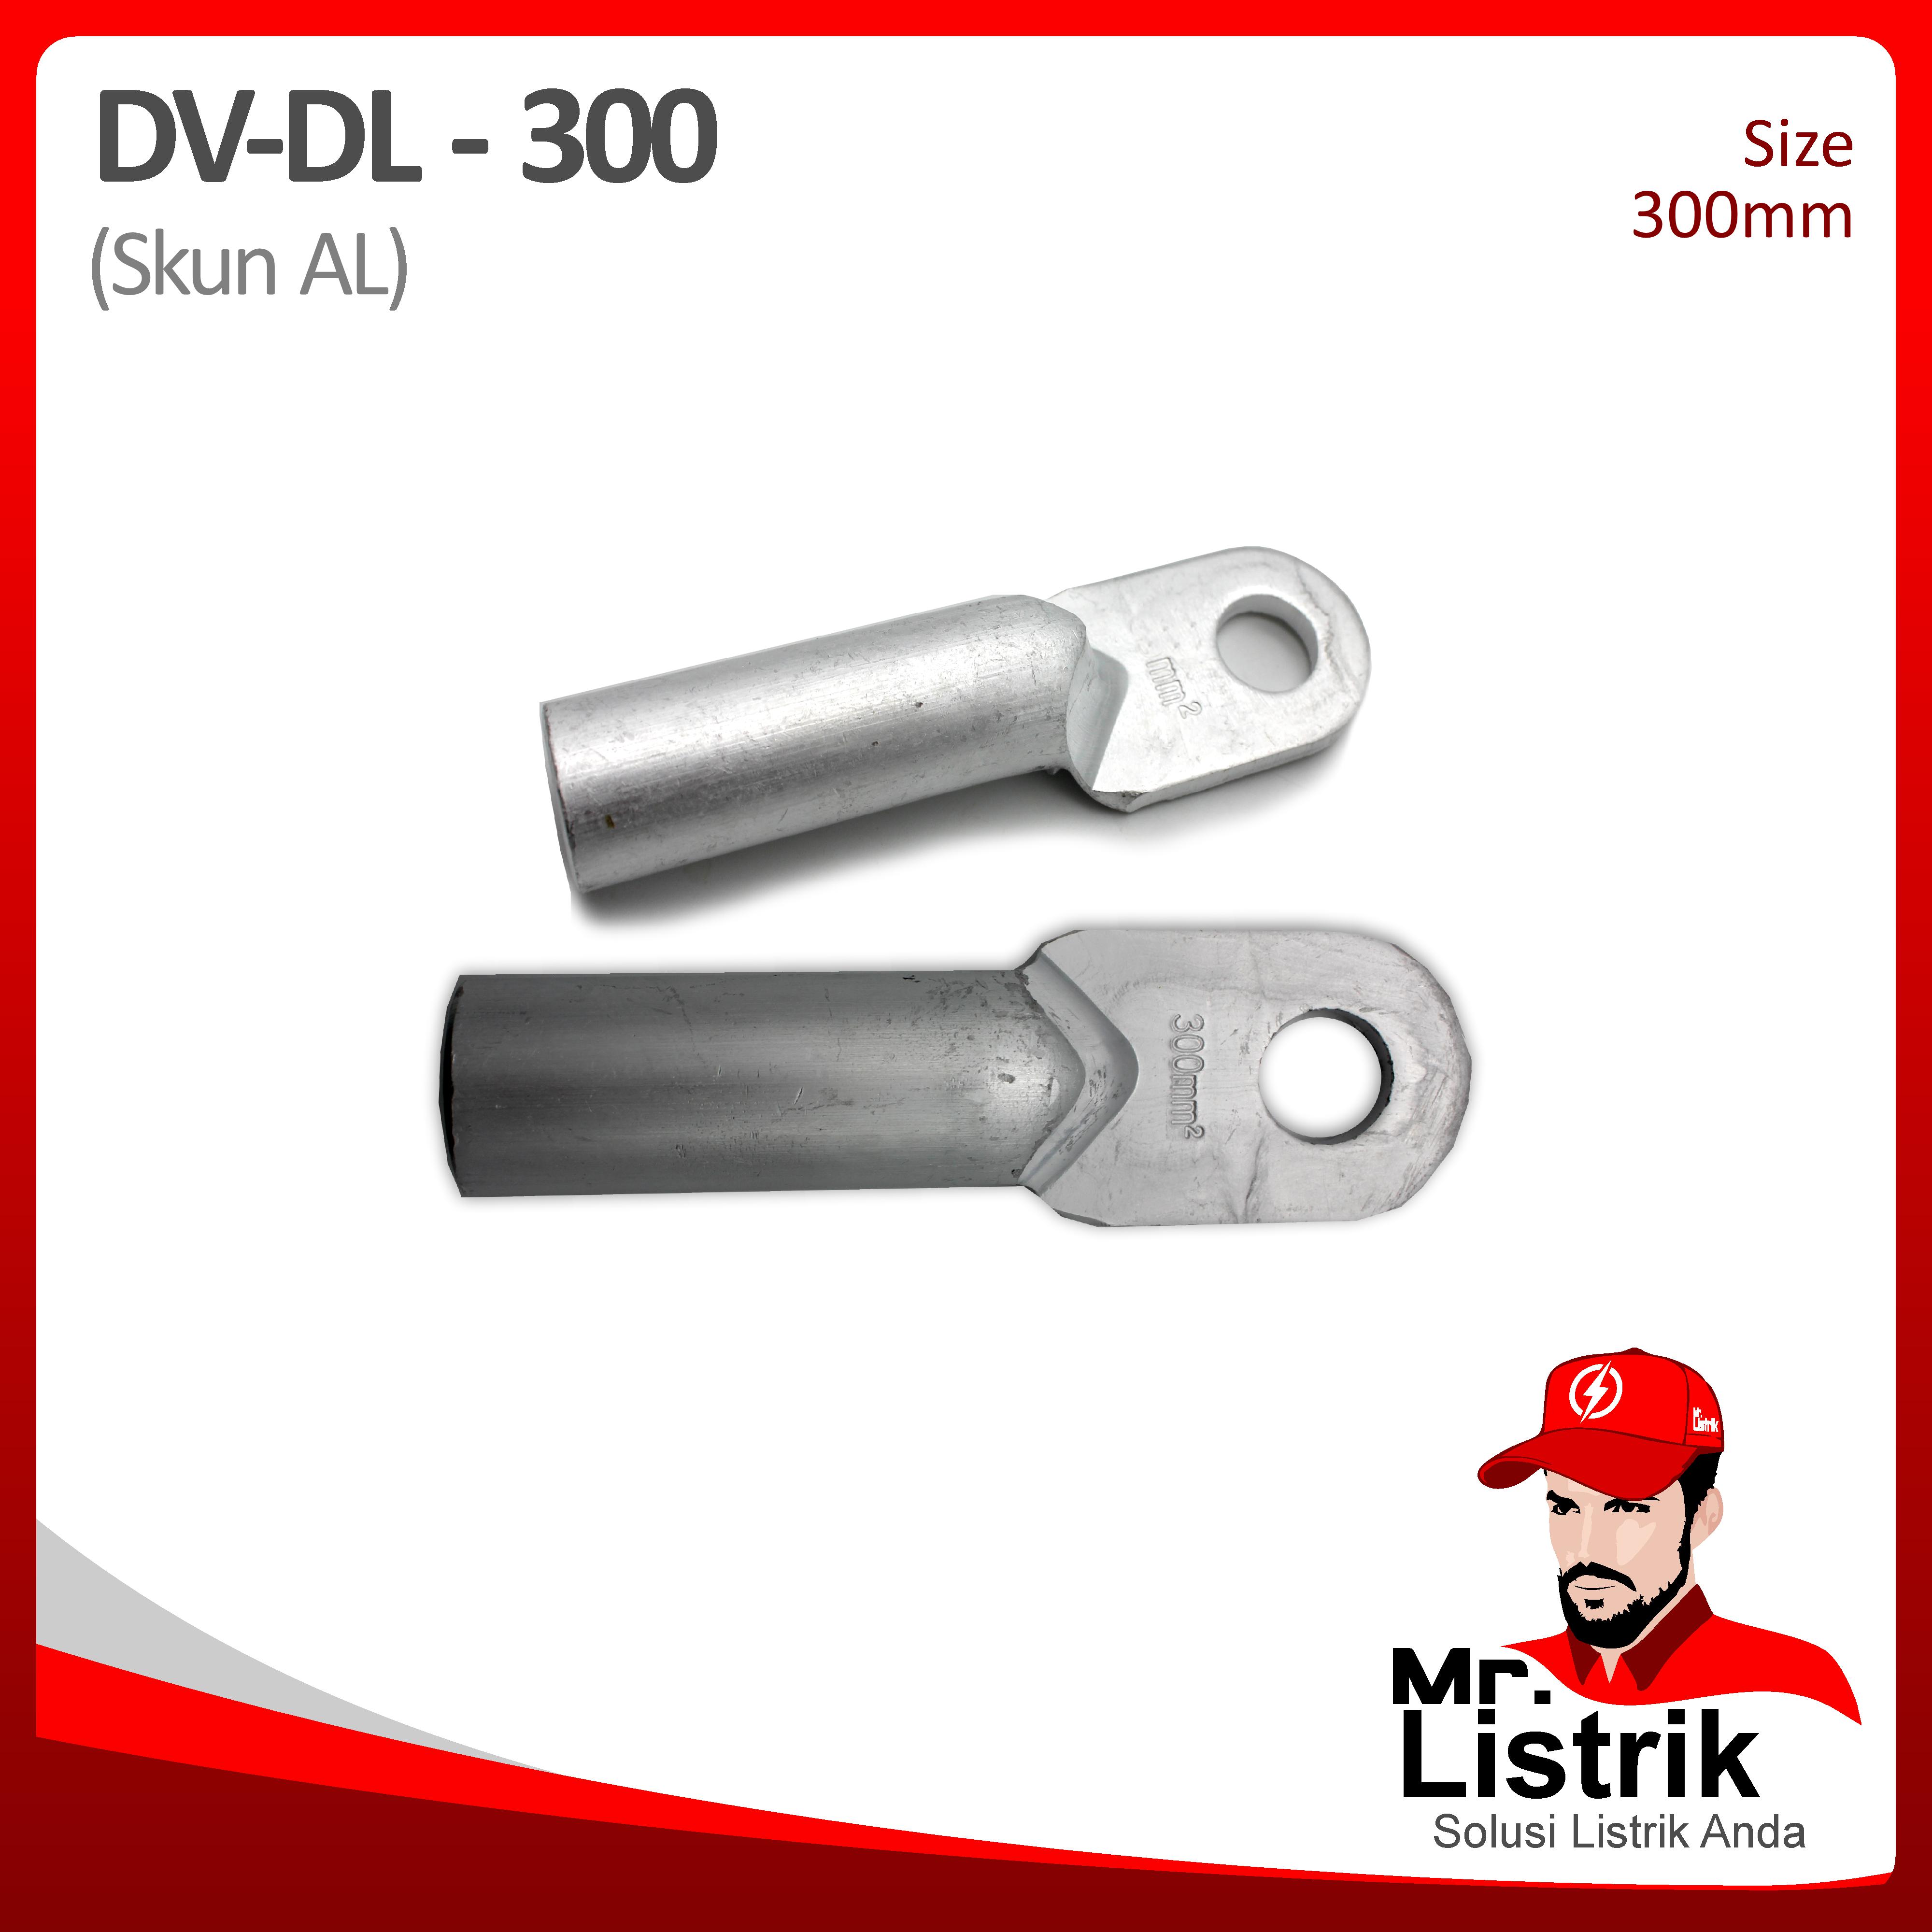 Skun AL 300mm DV DL-300